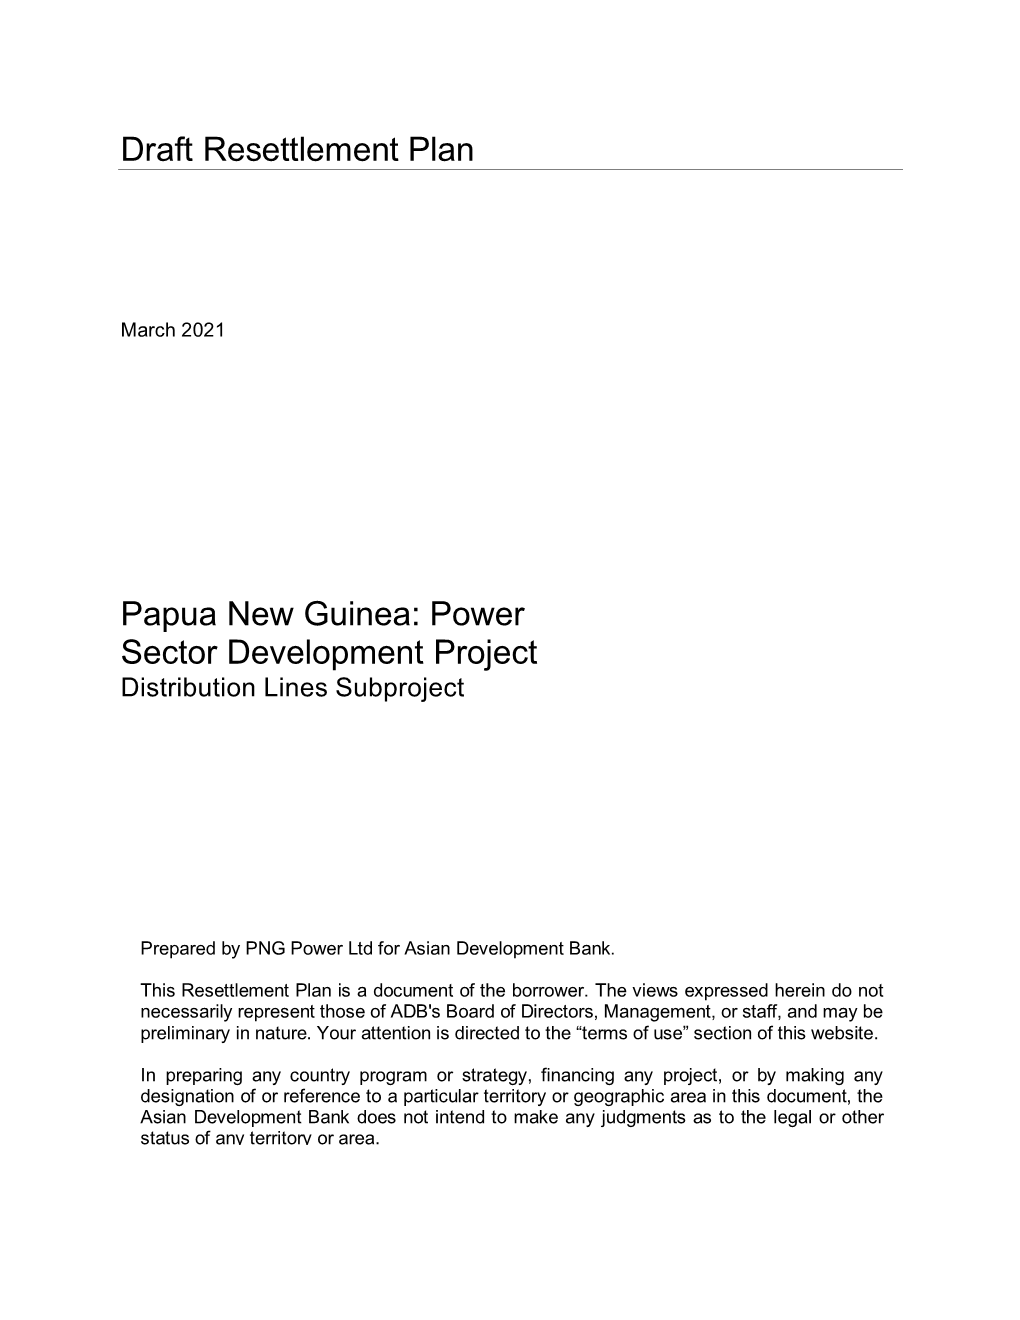 Draft Resettlement Plan Papua New Guinea: Power Sector Development